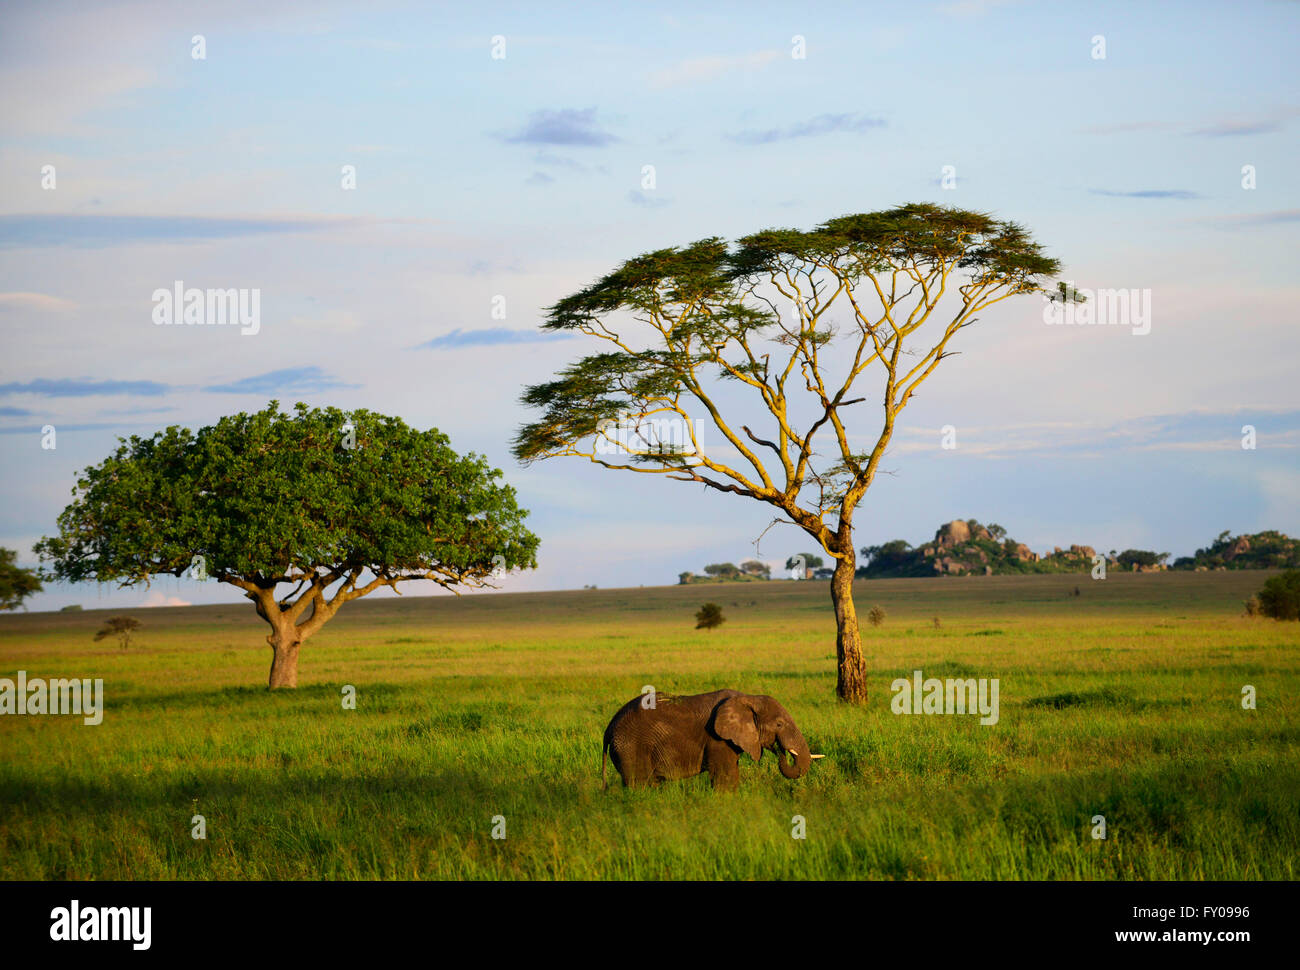 Una femmina di elefante al pascolo, Serengeti National Park, Tanzania. Foto Stock